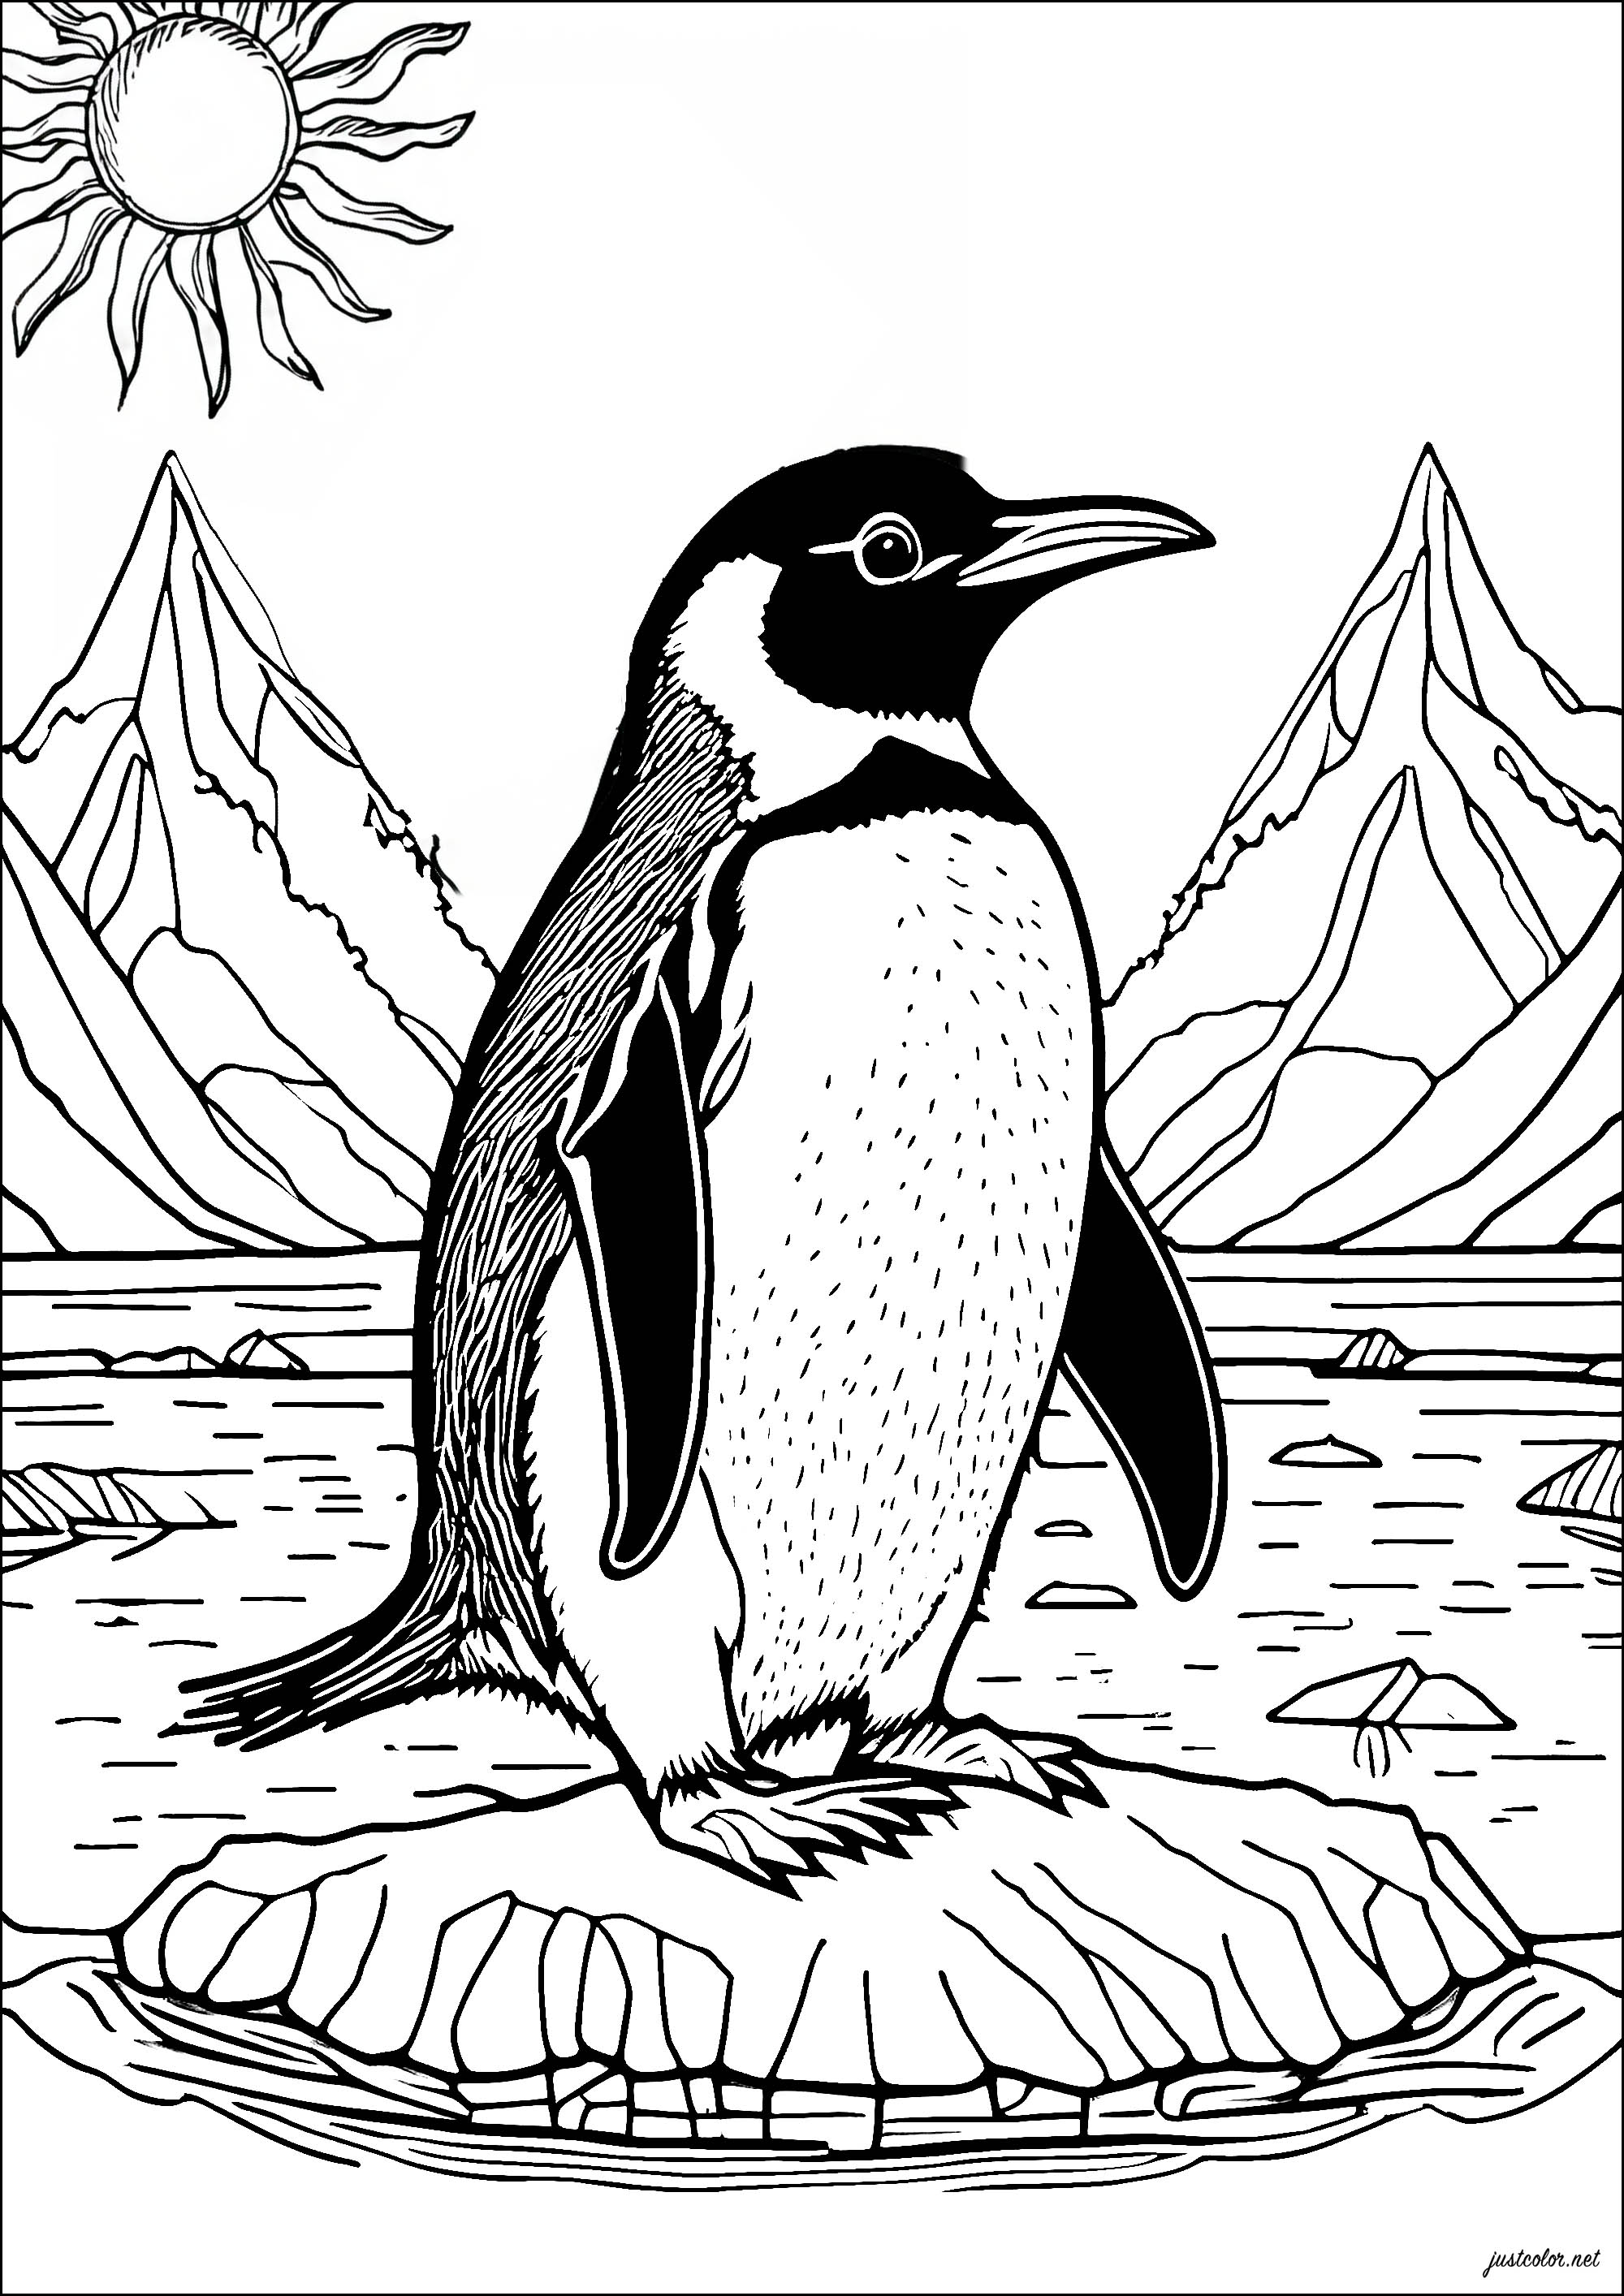 Joli pingouin sur un bloc de glace. Retrouvez vous sur la banquise avec ce beau coloriage